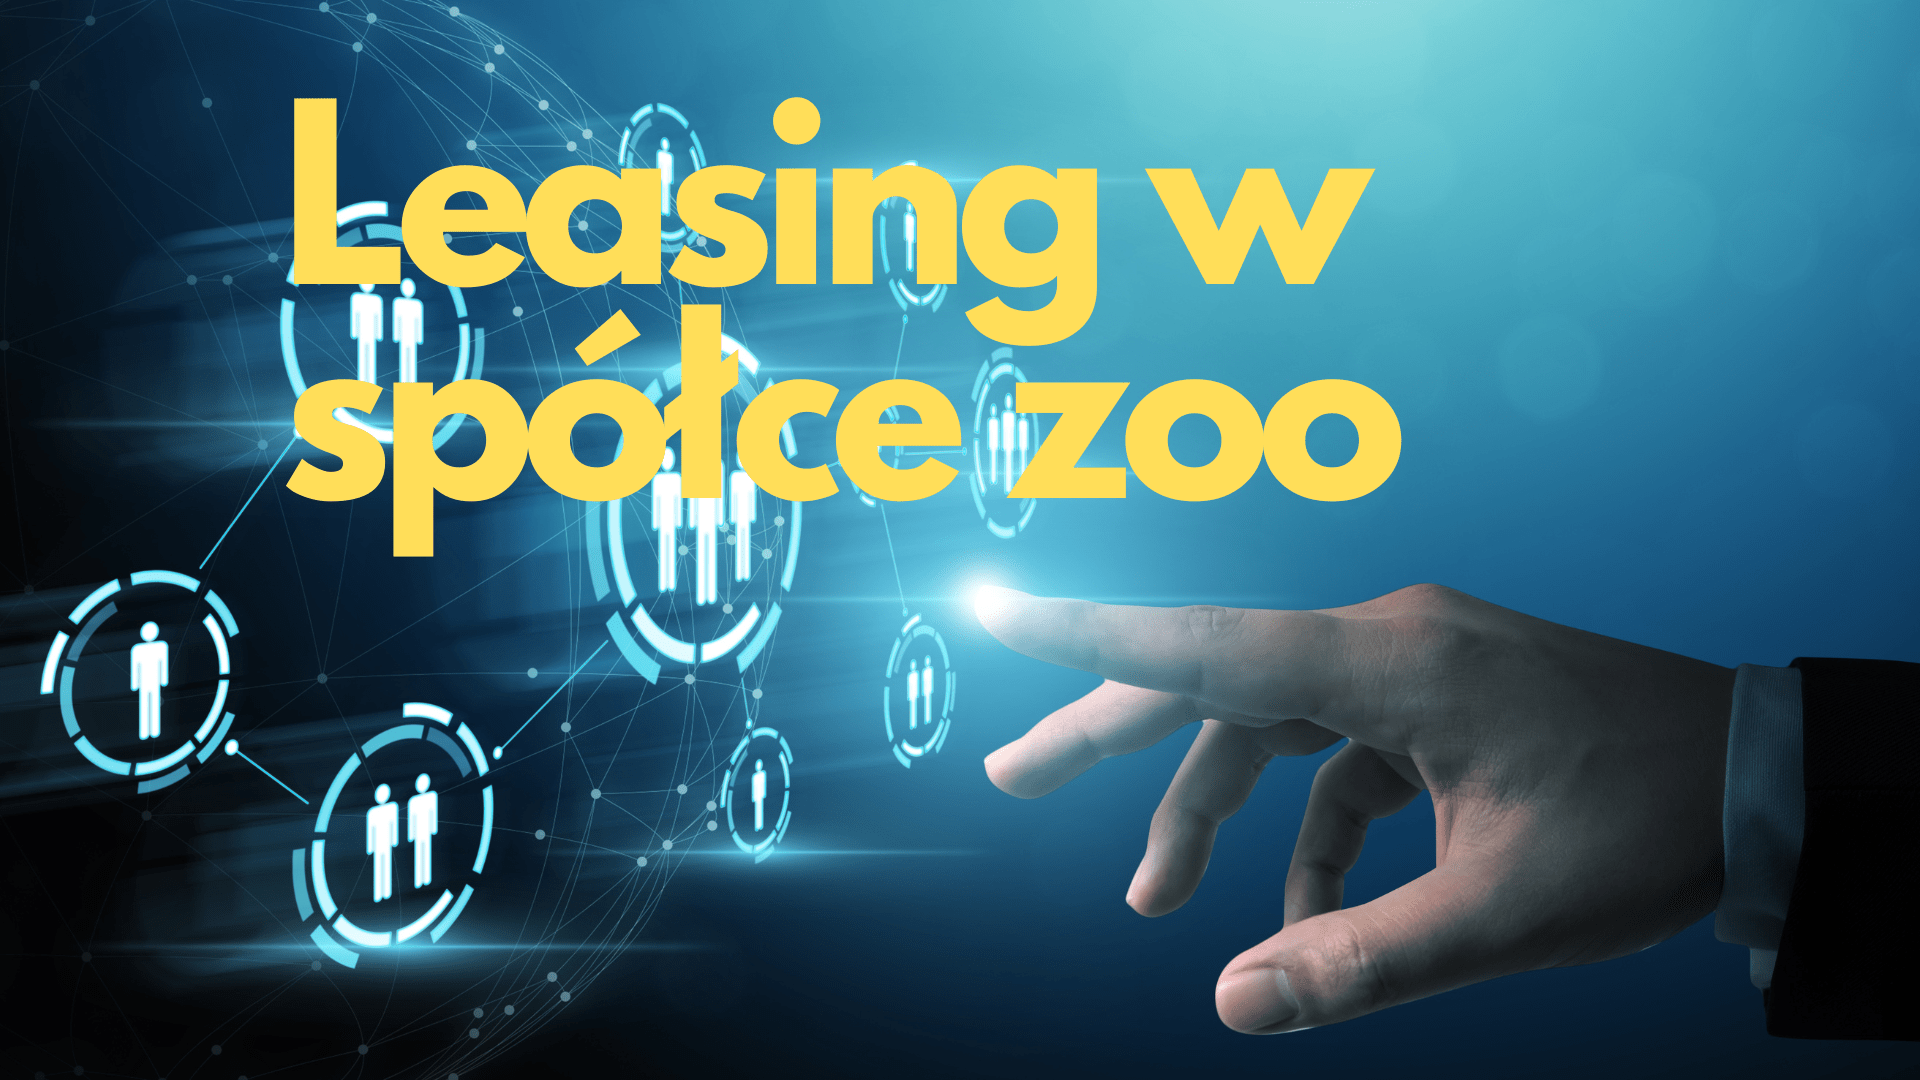 Leasing w spółce zoo cz. 2 – ile można odliczyć? Jakie są zasady?